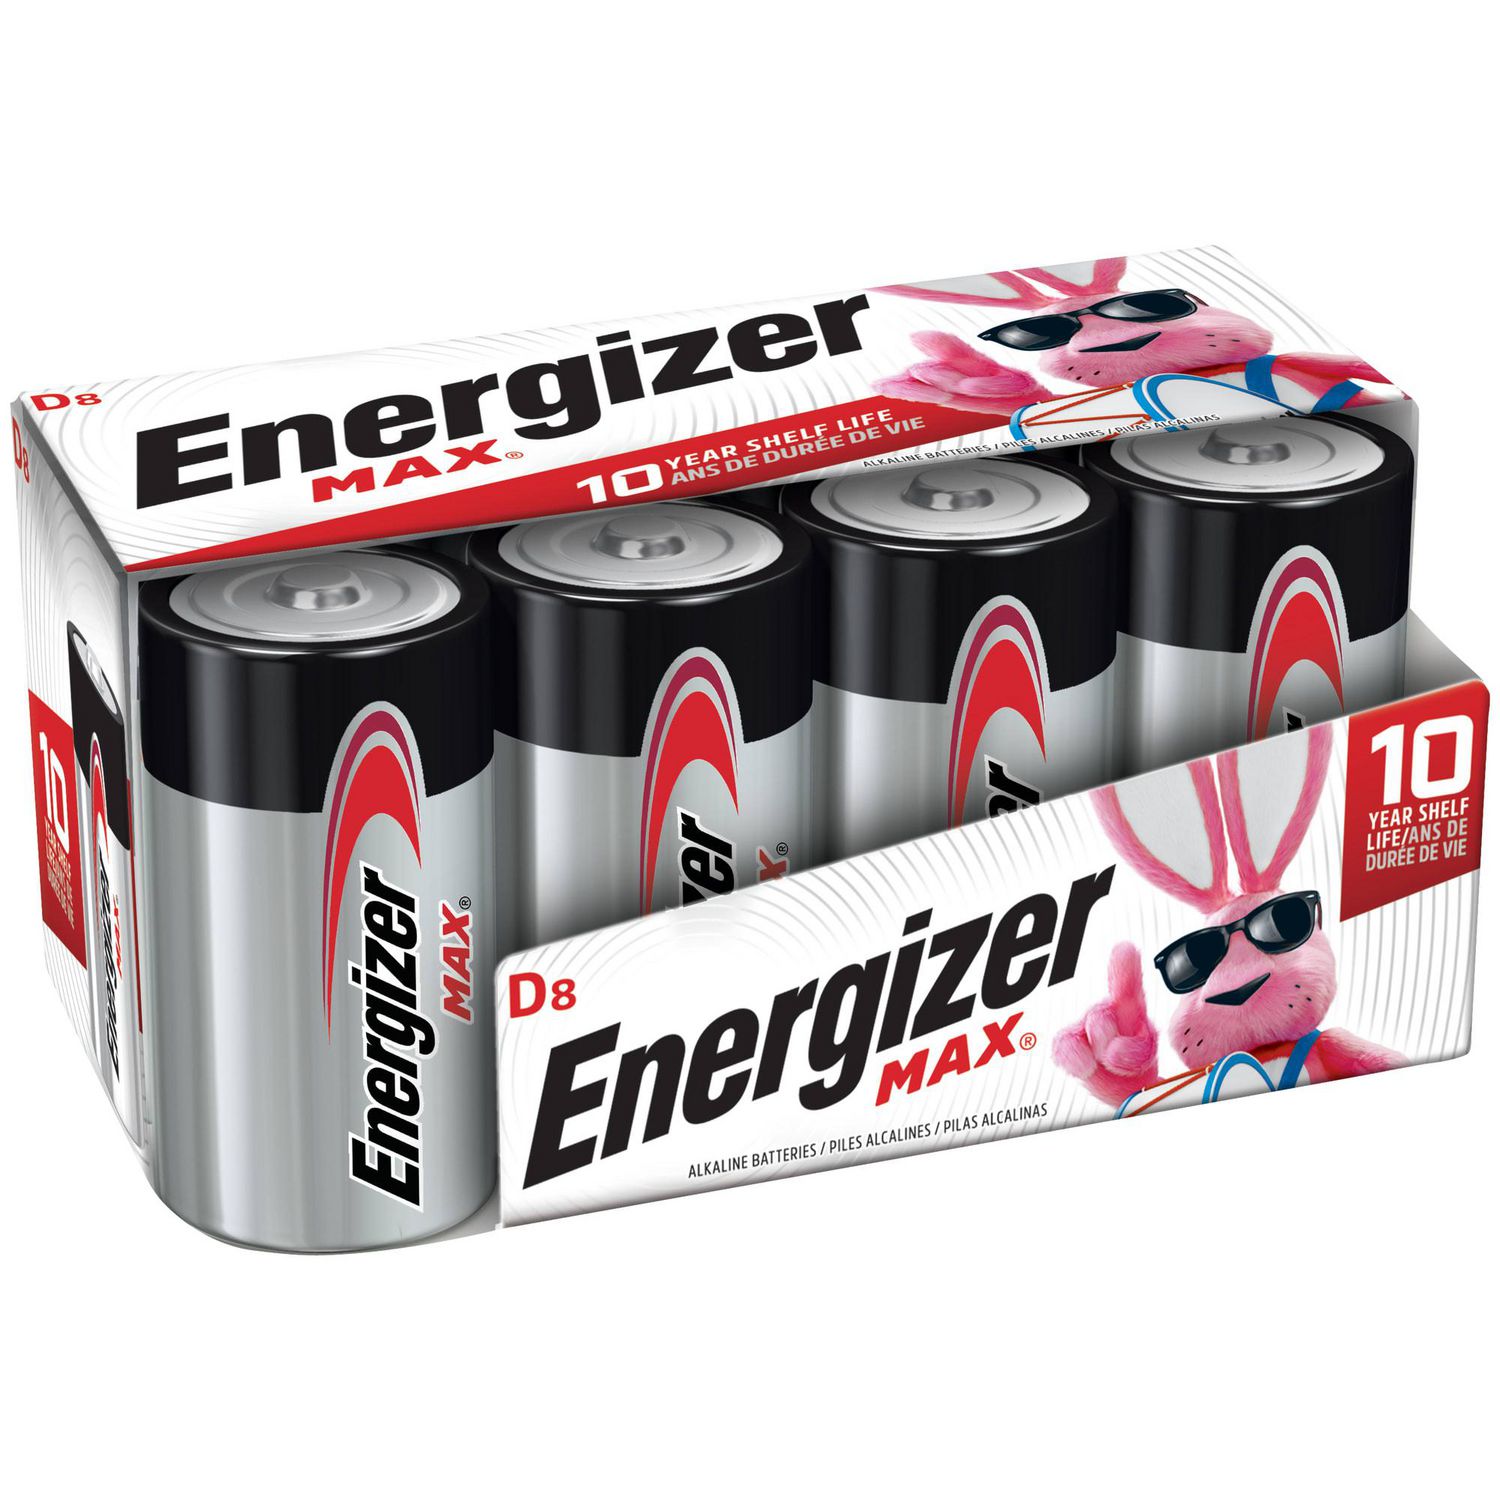 Energizer Pile Max 1616 - paquet de 1